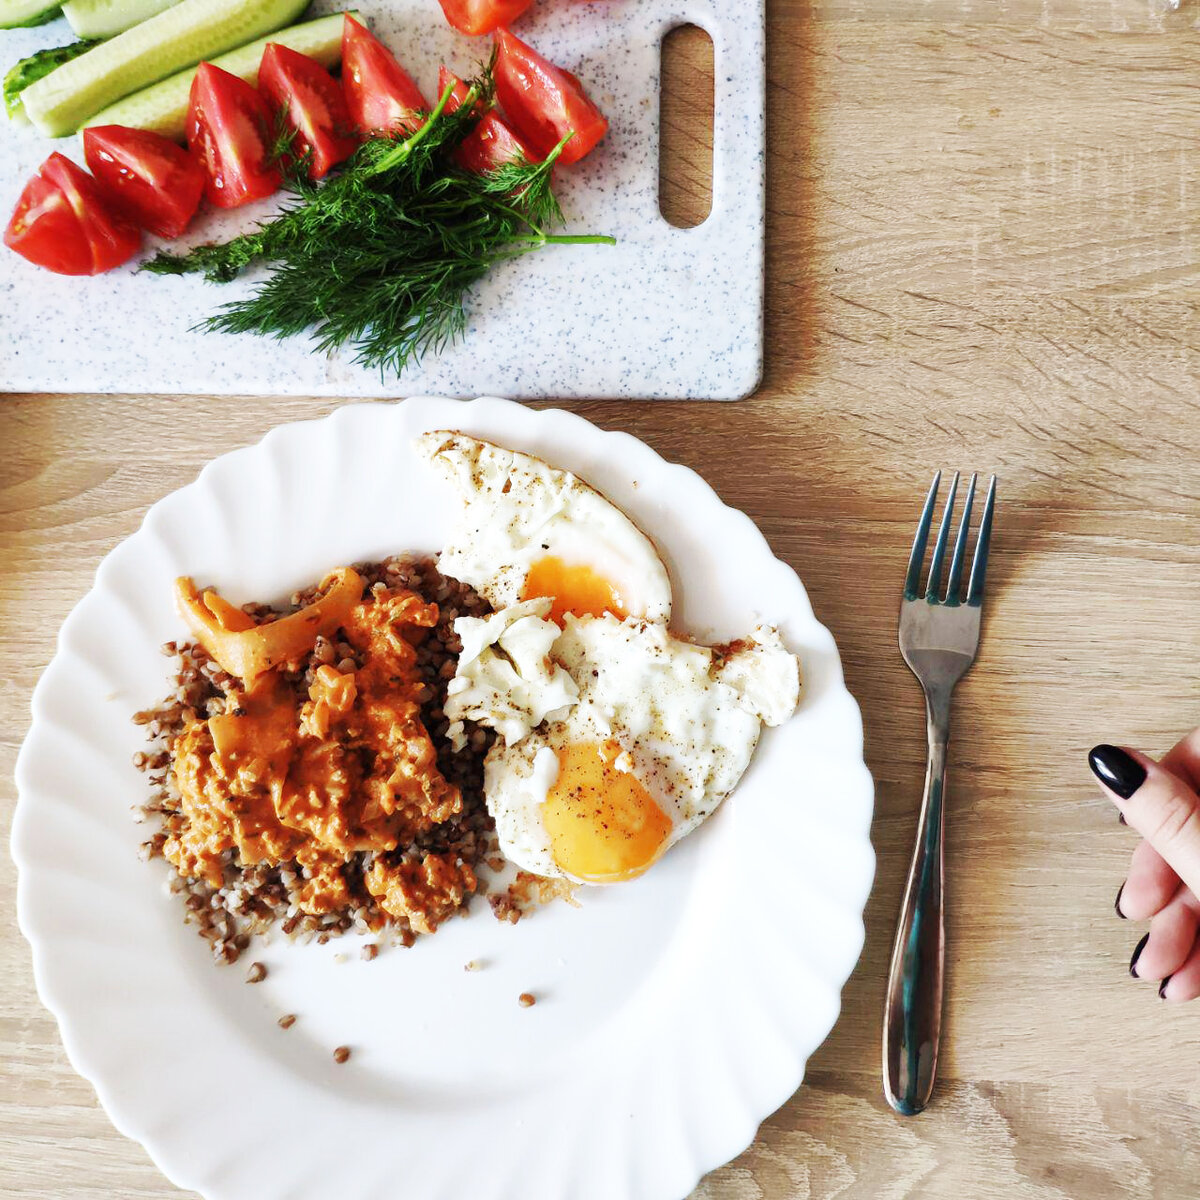 Белковый завтрак для похудения рецепты с фото и калориями